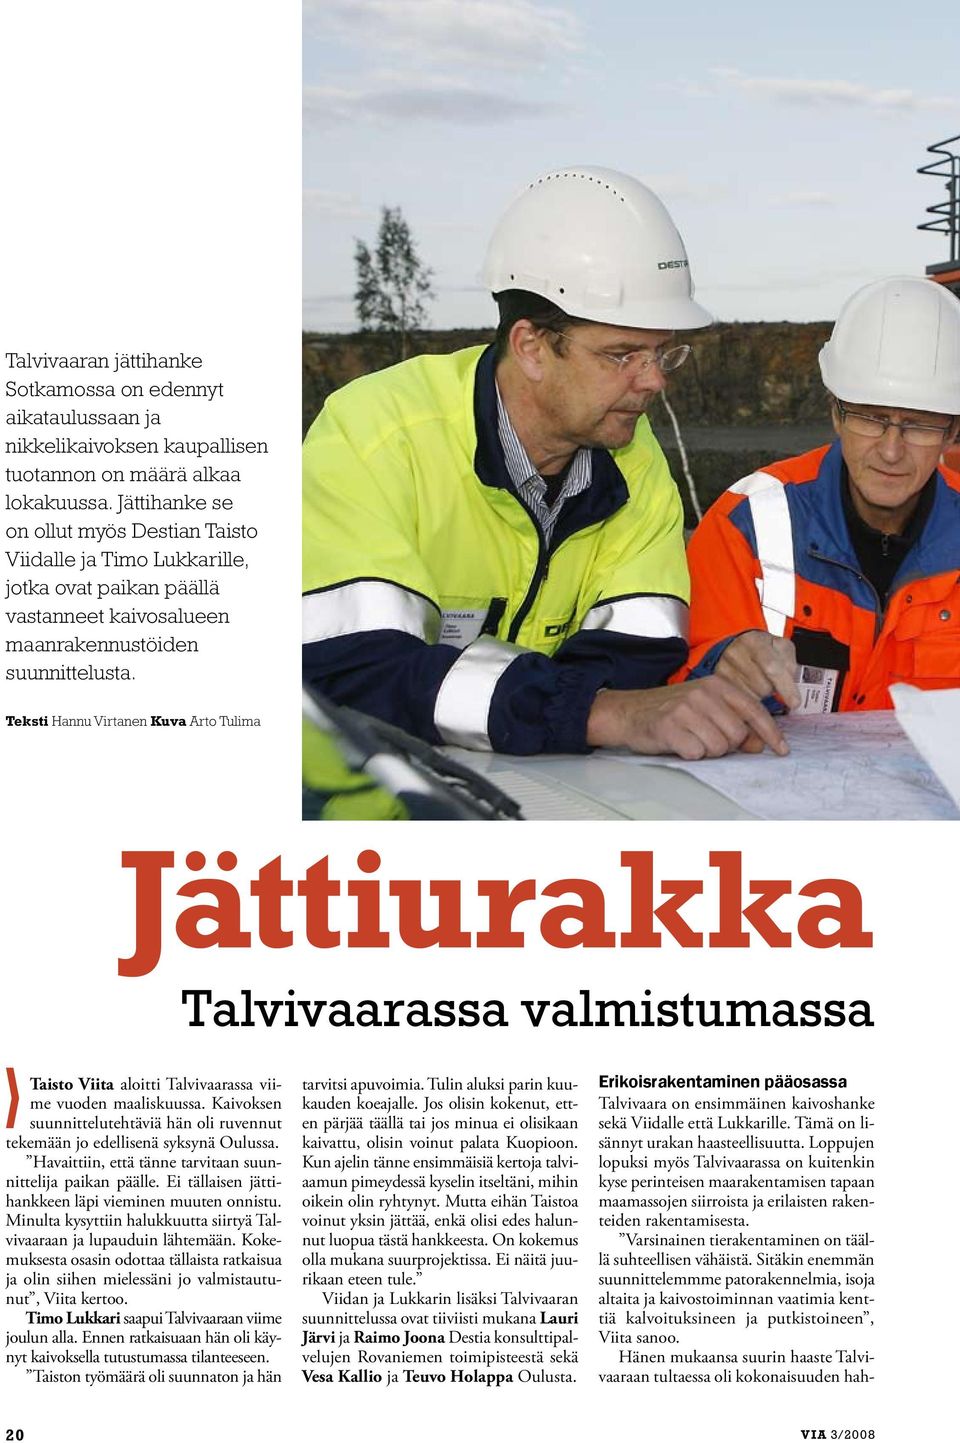 Teksti Hannu Virtanen Kuva Arto Tulima Jättiurakka Taisto Viita aloitti Talvivaarassa viime vuoden maaliskuussa. Kaivoksen suunnittelutehtäviä hän oli ruvennut tekemään jo edellisenä syksynä Oulussa.